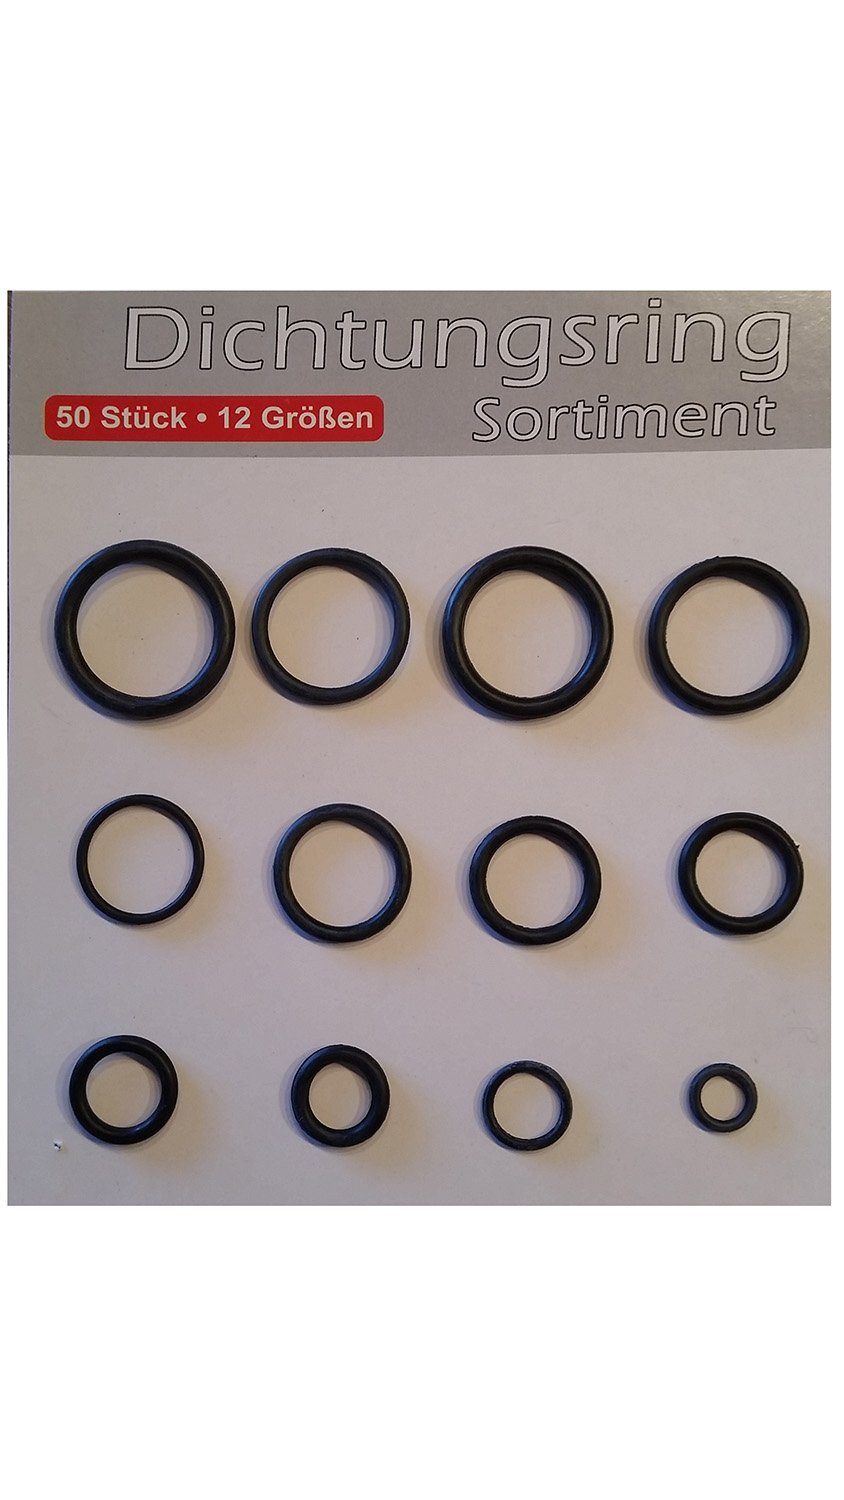 20 Gummi Dichtungen Ringe Metrische Dichtung 18mm AD 11,8mm ID 3